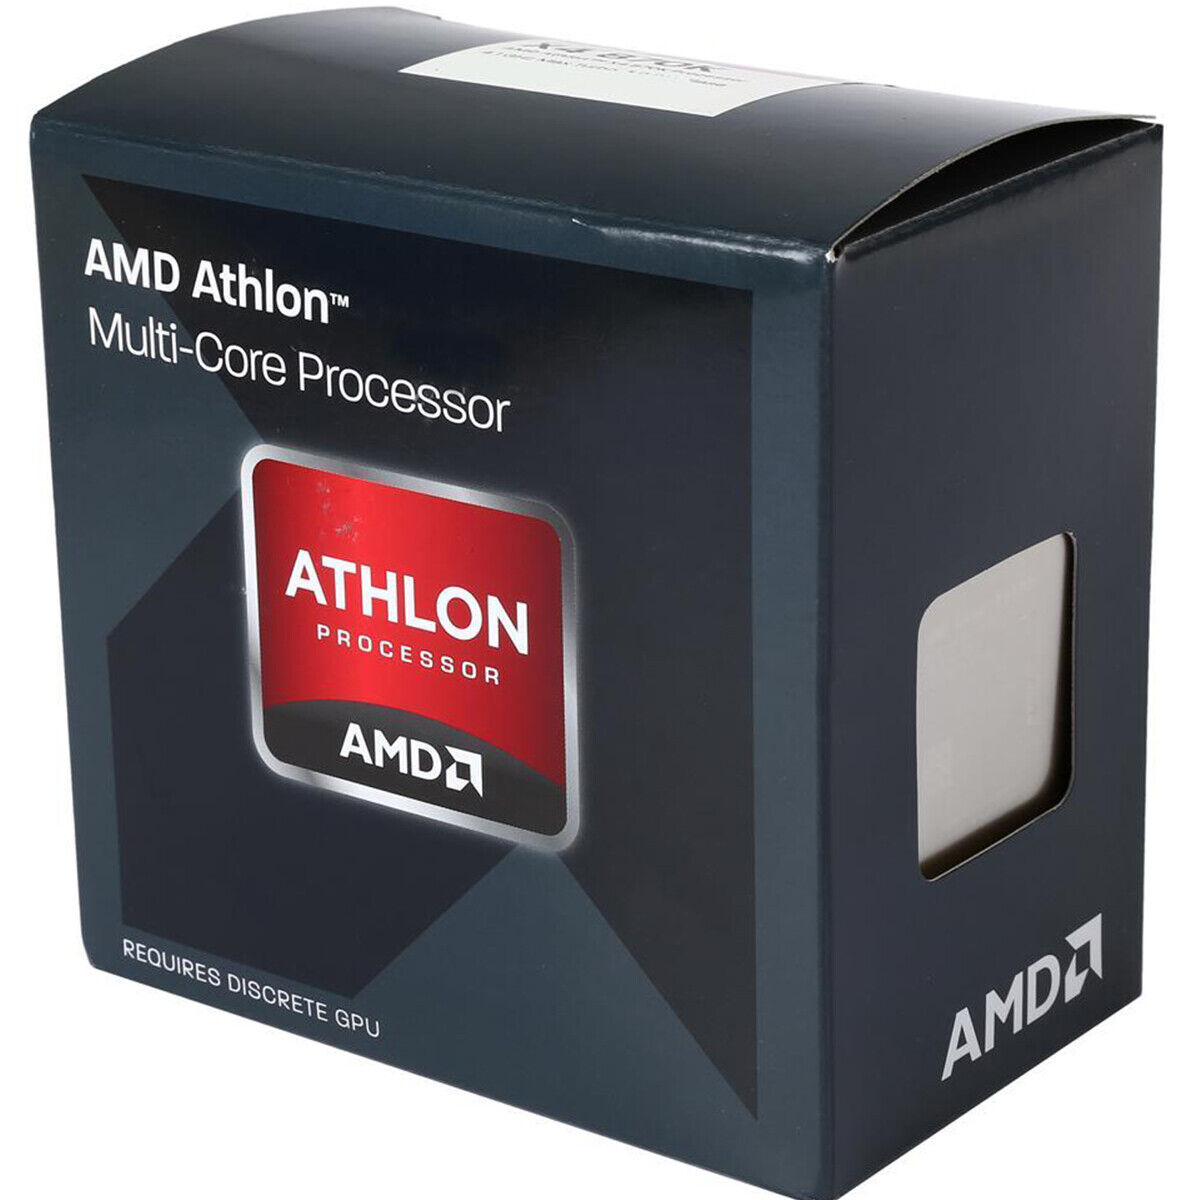 AMD Athlon X4 870k Quad-Core Socket FM2+ 95W AD870KXBI44JC Desktop Processor